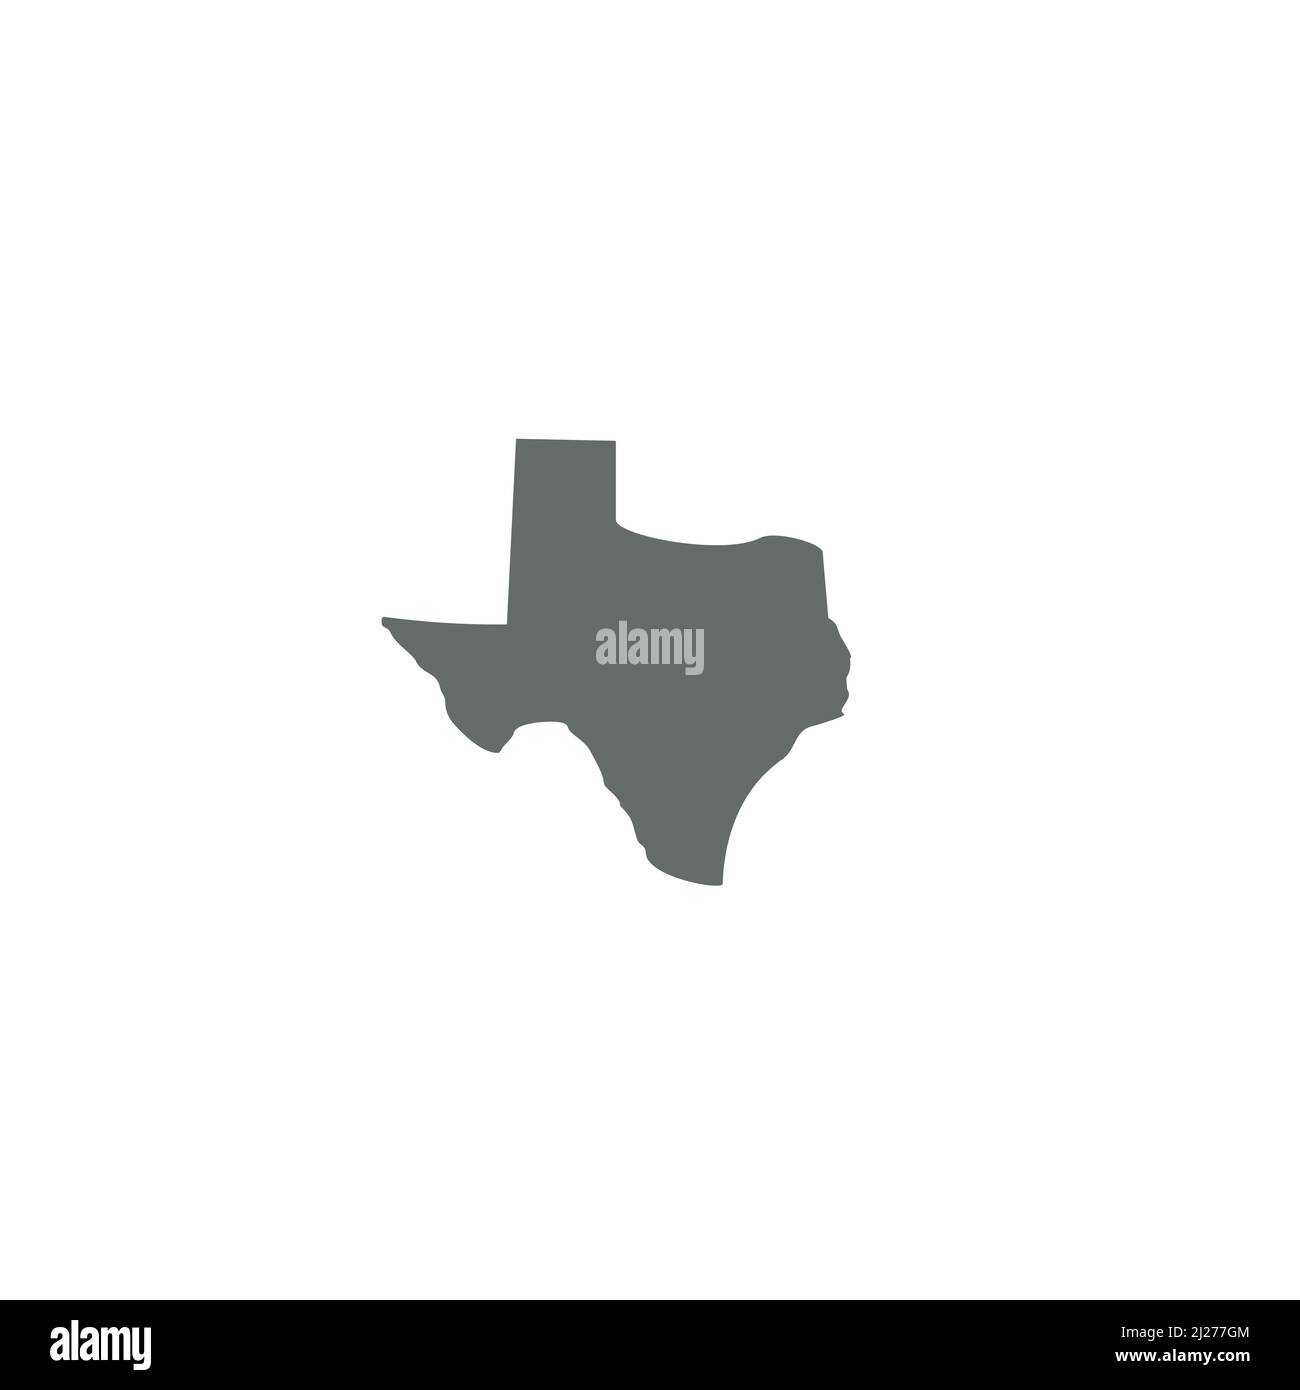 Texas Map logo or icon design Stock Vector